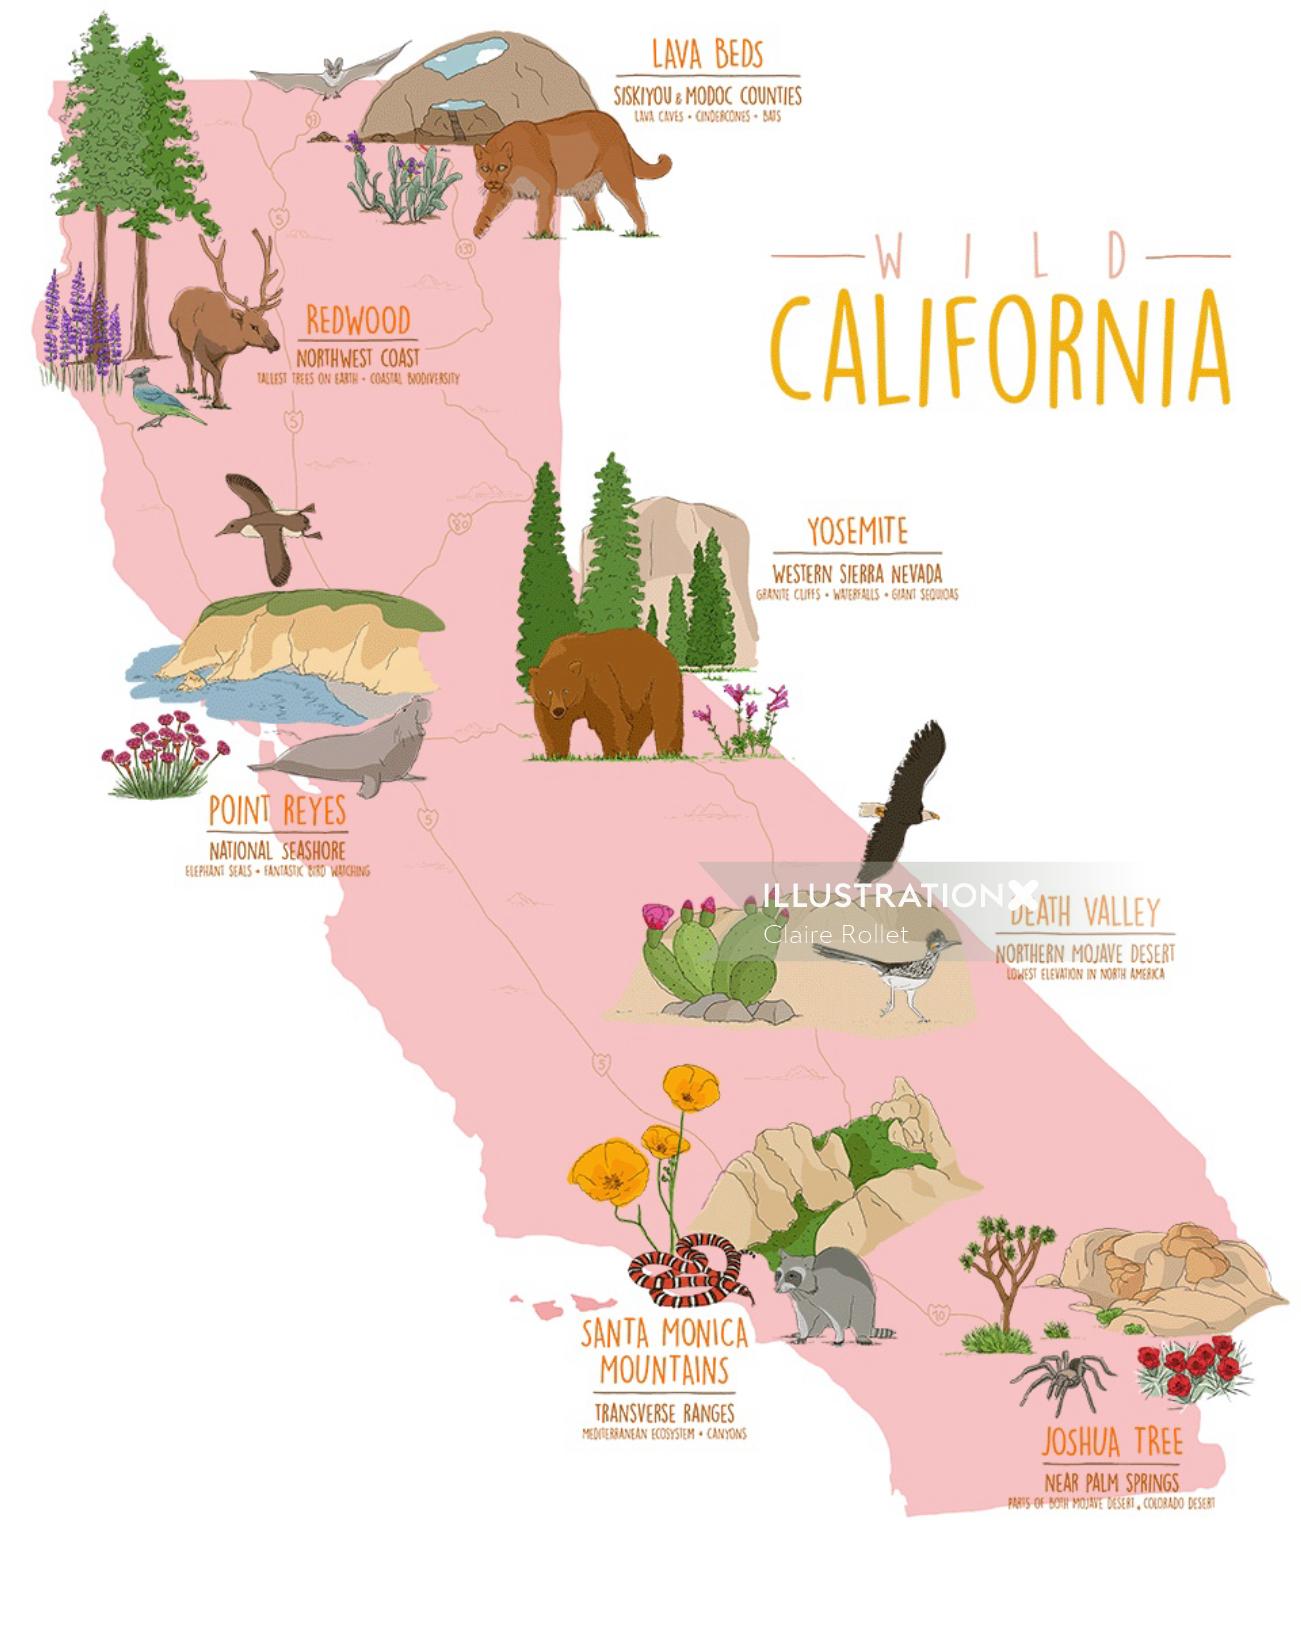 La hermosa naturaleza salvaje de los parques nacionales de California se muestra en este mapa